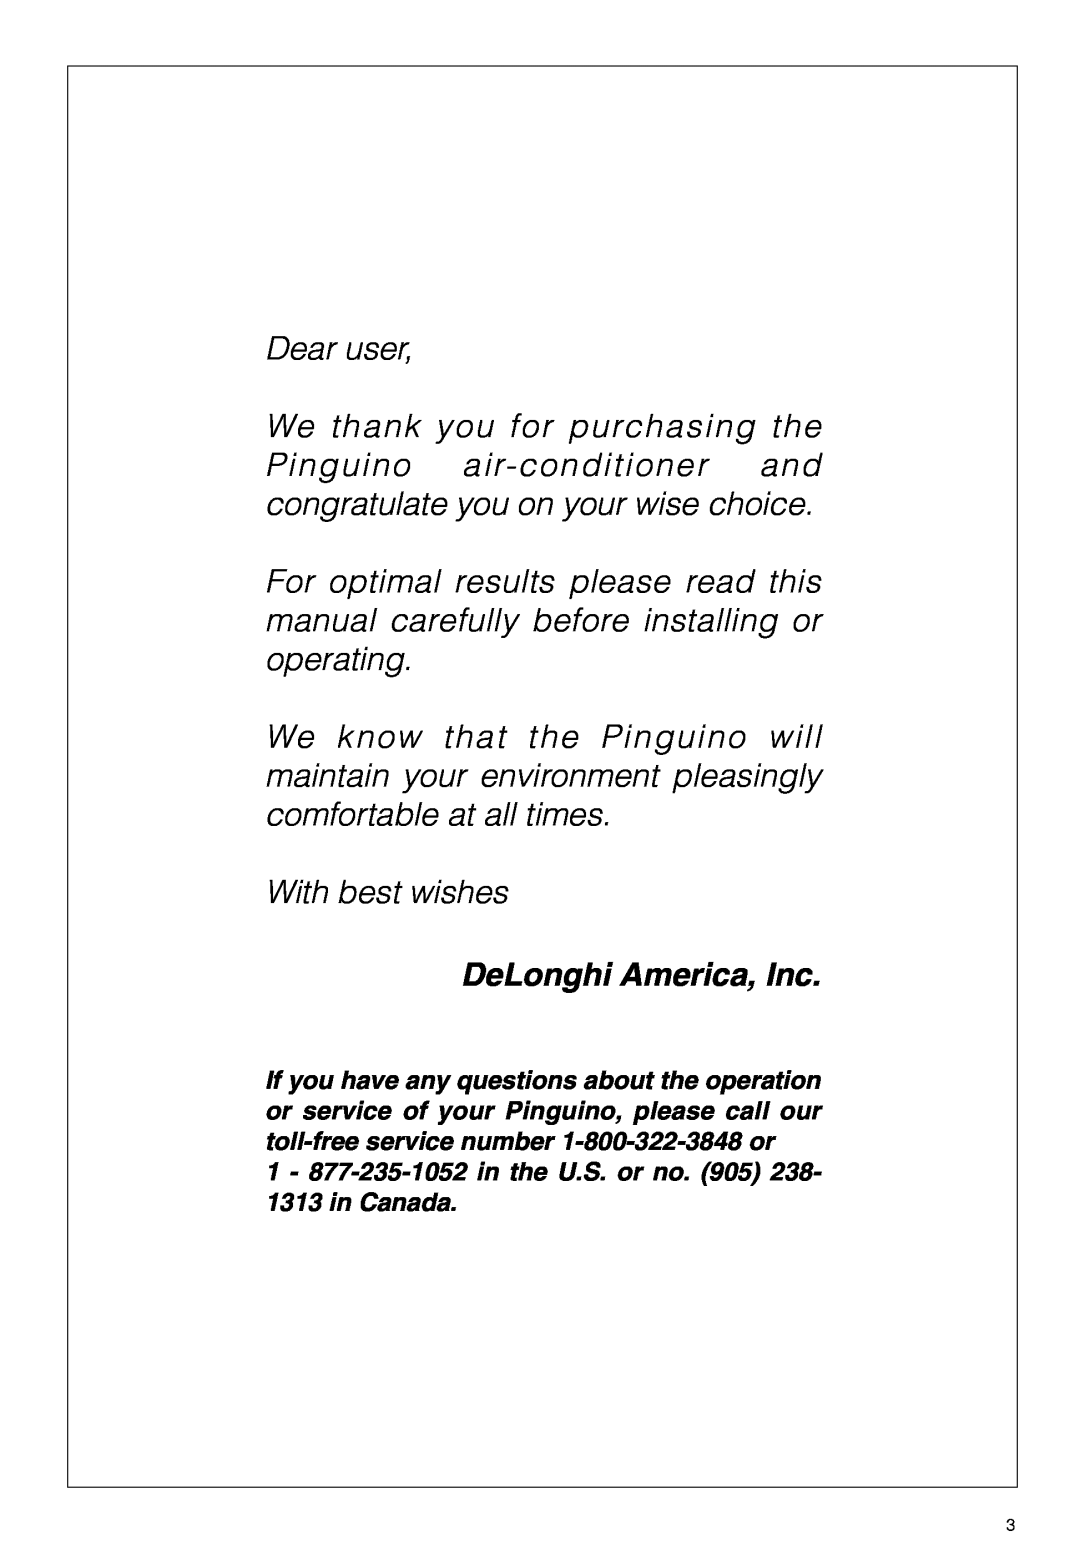 DeLonghi PAC 290 U owner manual DeLonghi America, Inc 